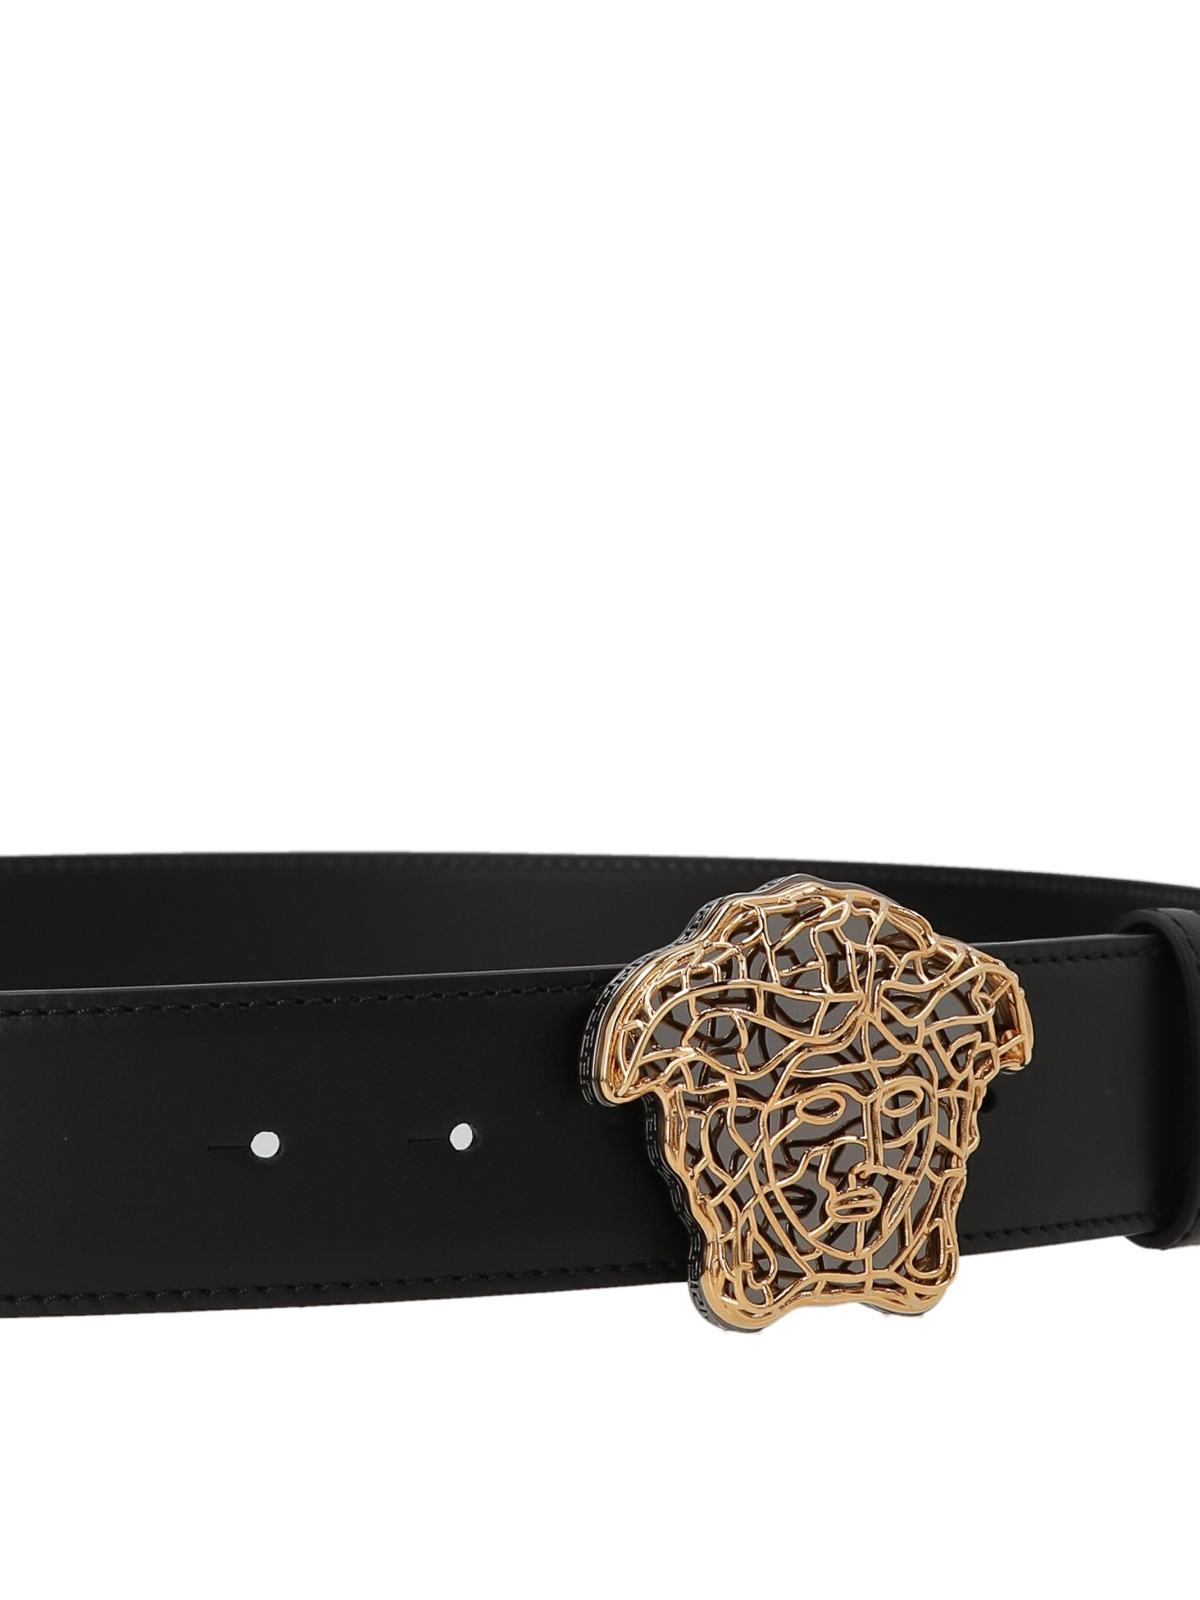 Belts Versace - Medusa belt - 1008706DVTP11B00R | Shop online at iKRIX